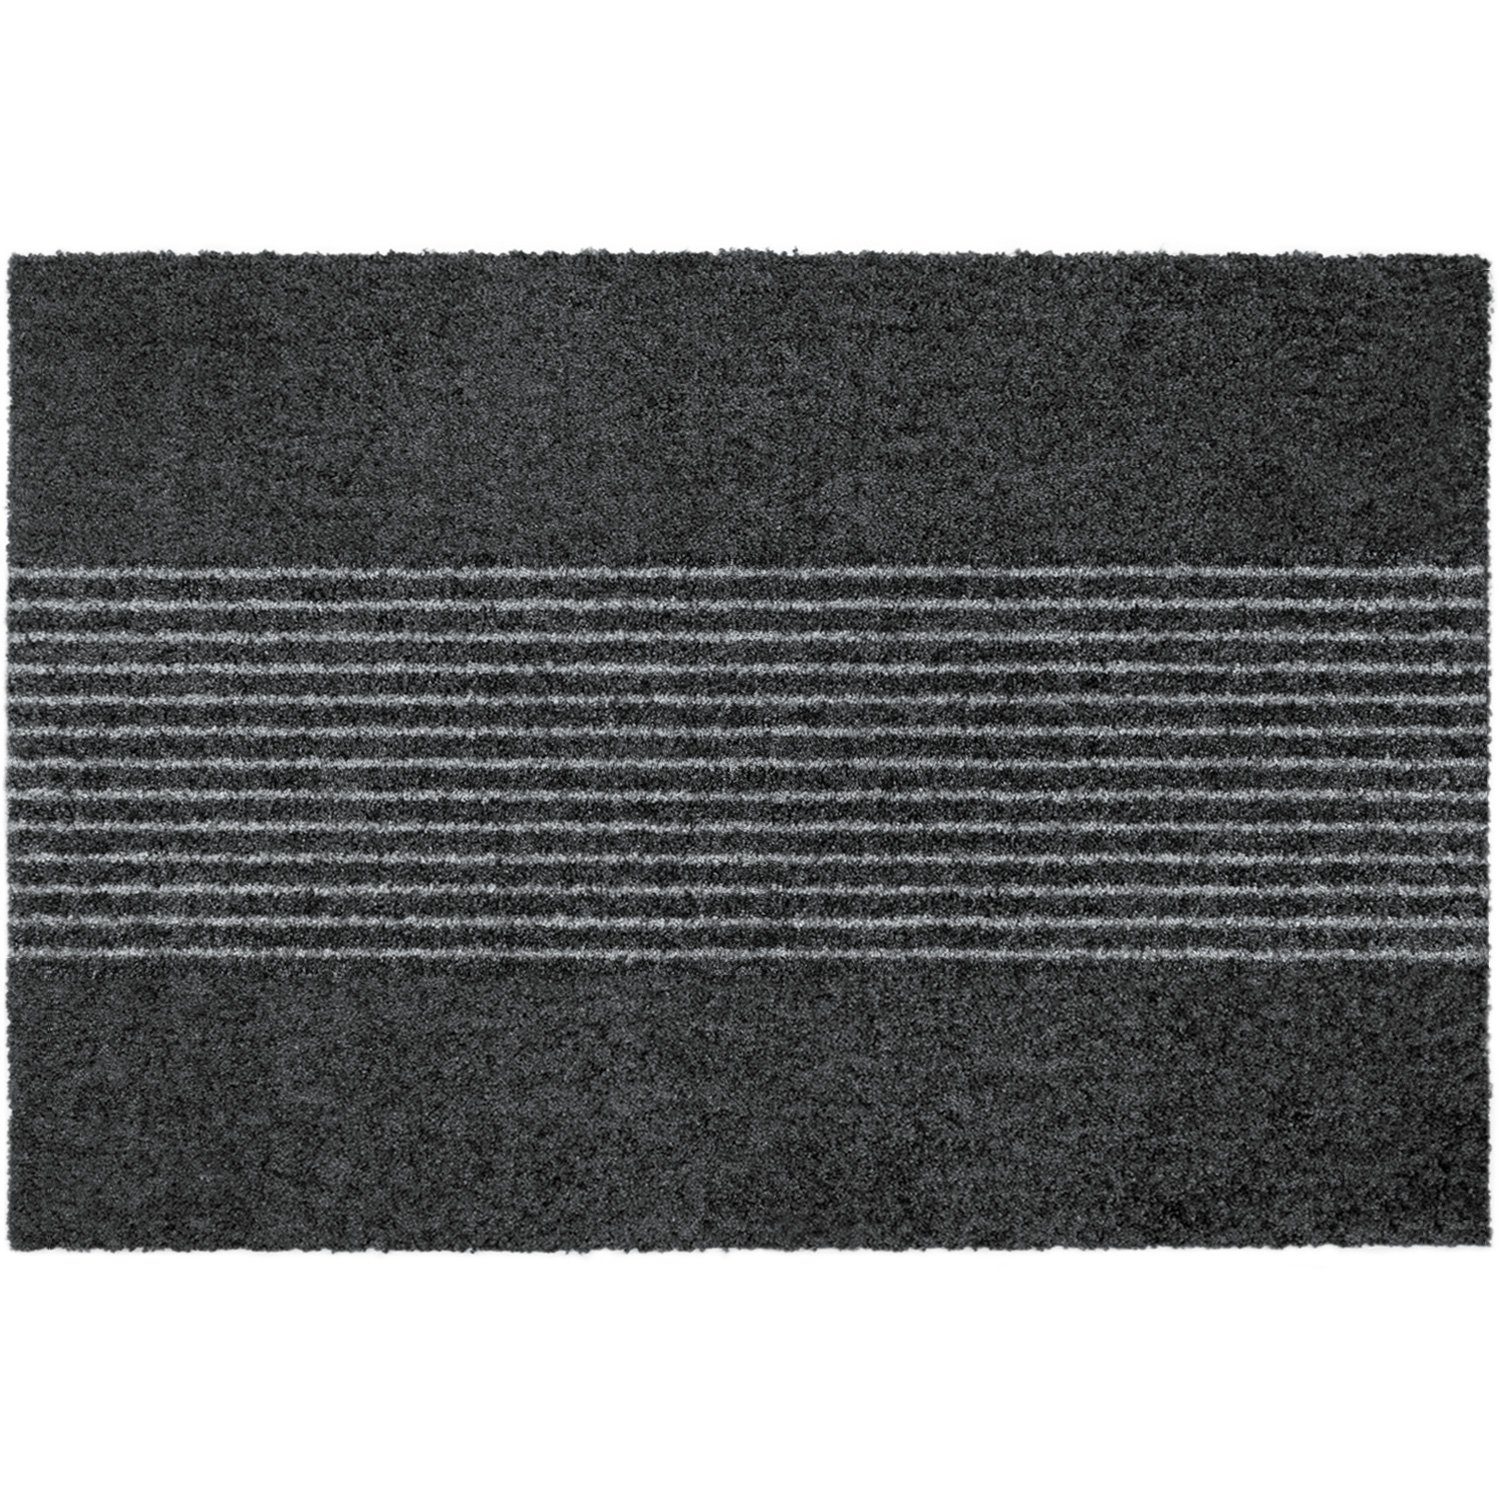 Fußmatte »MOCAVI Step 340 Design-Fußmatte randlos anthrazit 50 x 70 cm  Sauberlaufmatte Streifen«, MOCAVI, Höhe 9 mm online kaufen | OTTO